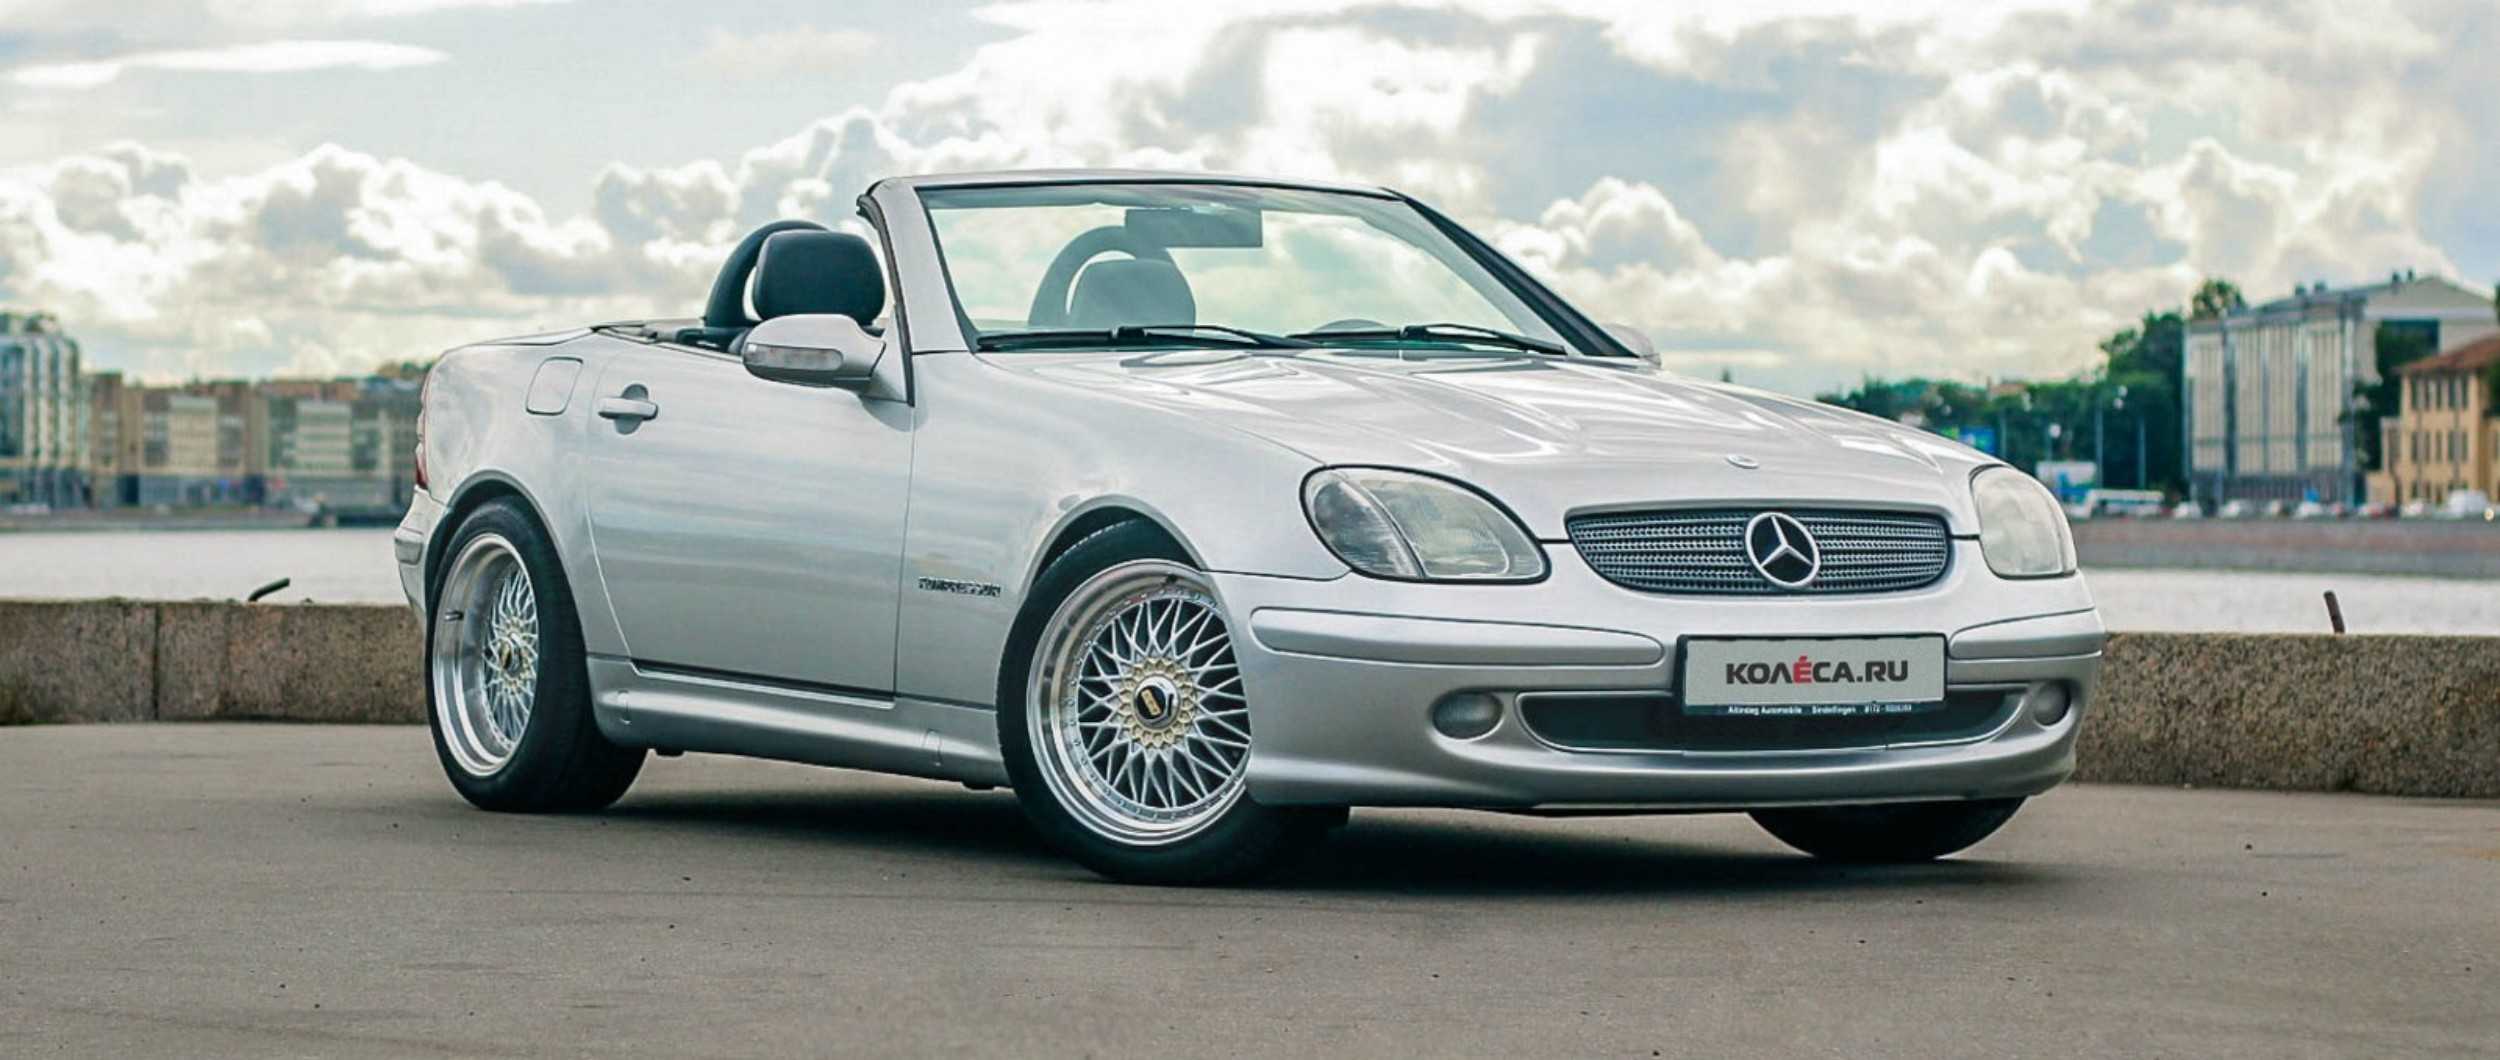 Mercedes-benz slk-klasse: поколения, кузова по годам, история модели и года выпуска, рестайлинг, характеристики, габариты, фото - carsweek